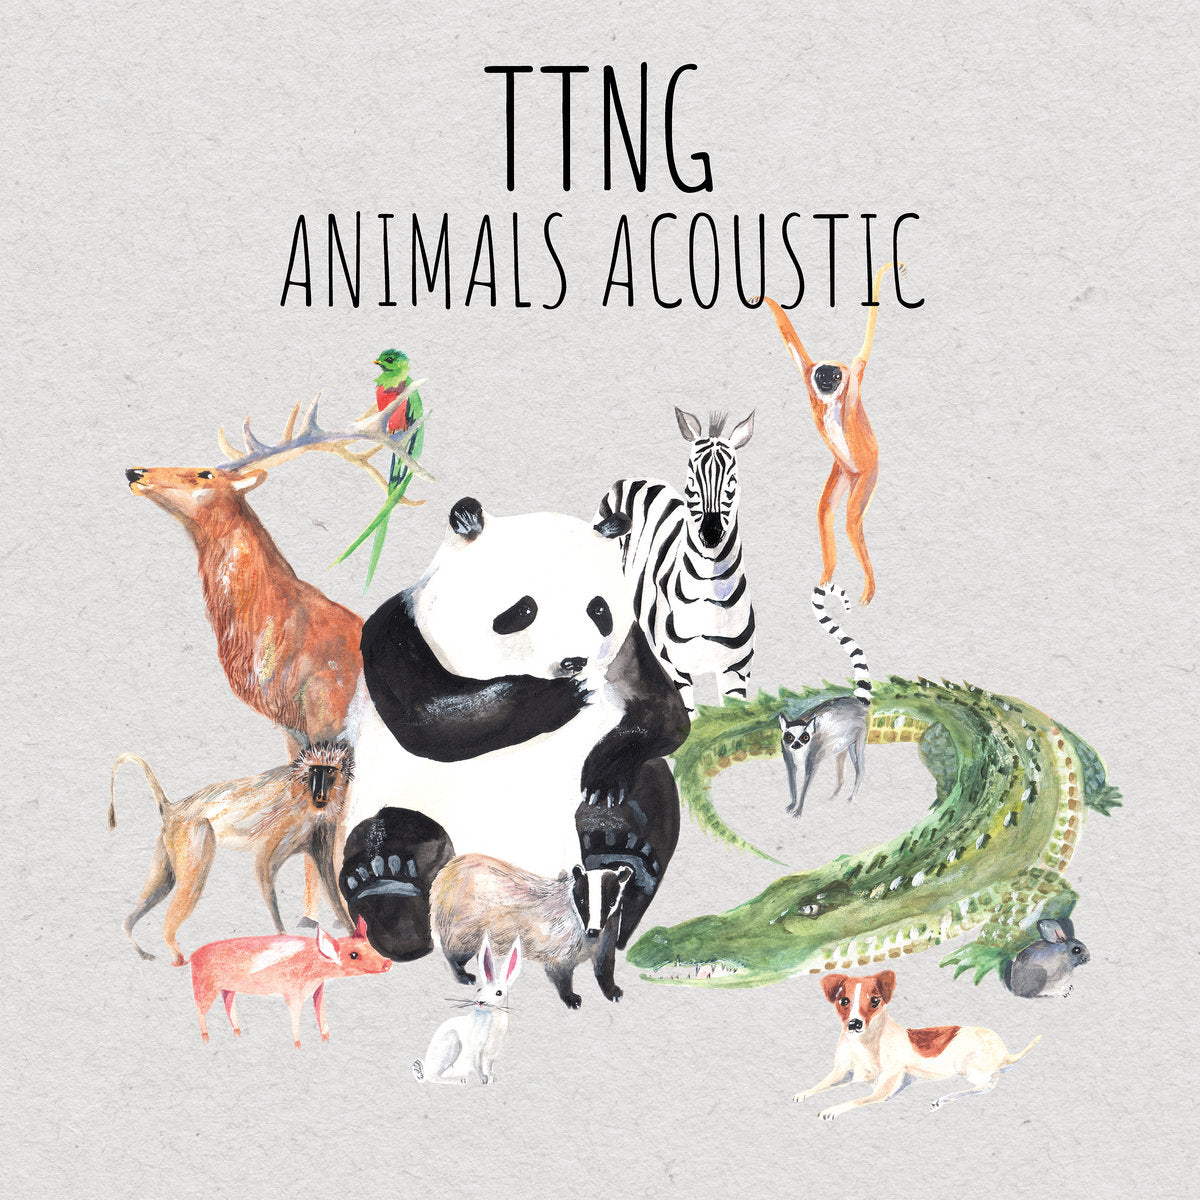 TTNG "Animals - Acoustic" LP